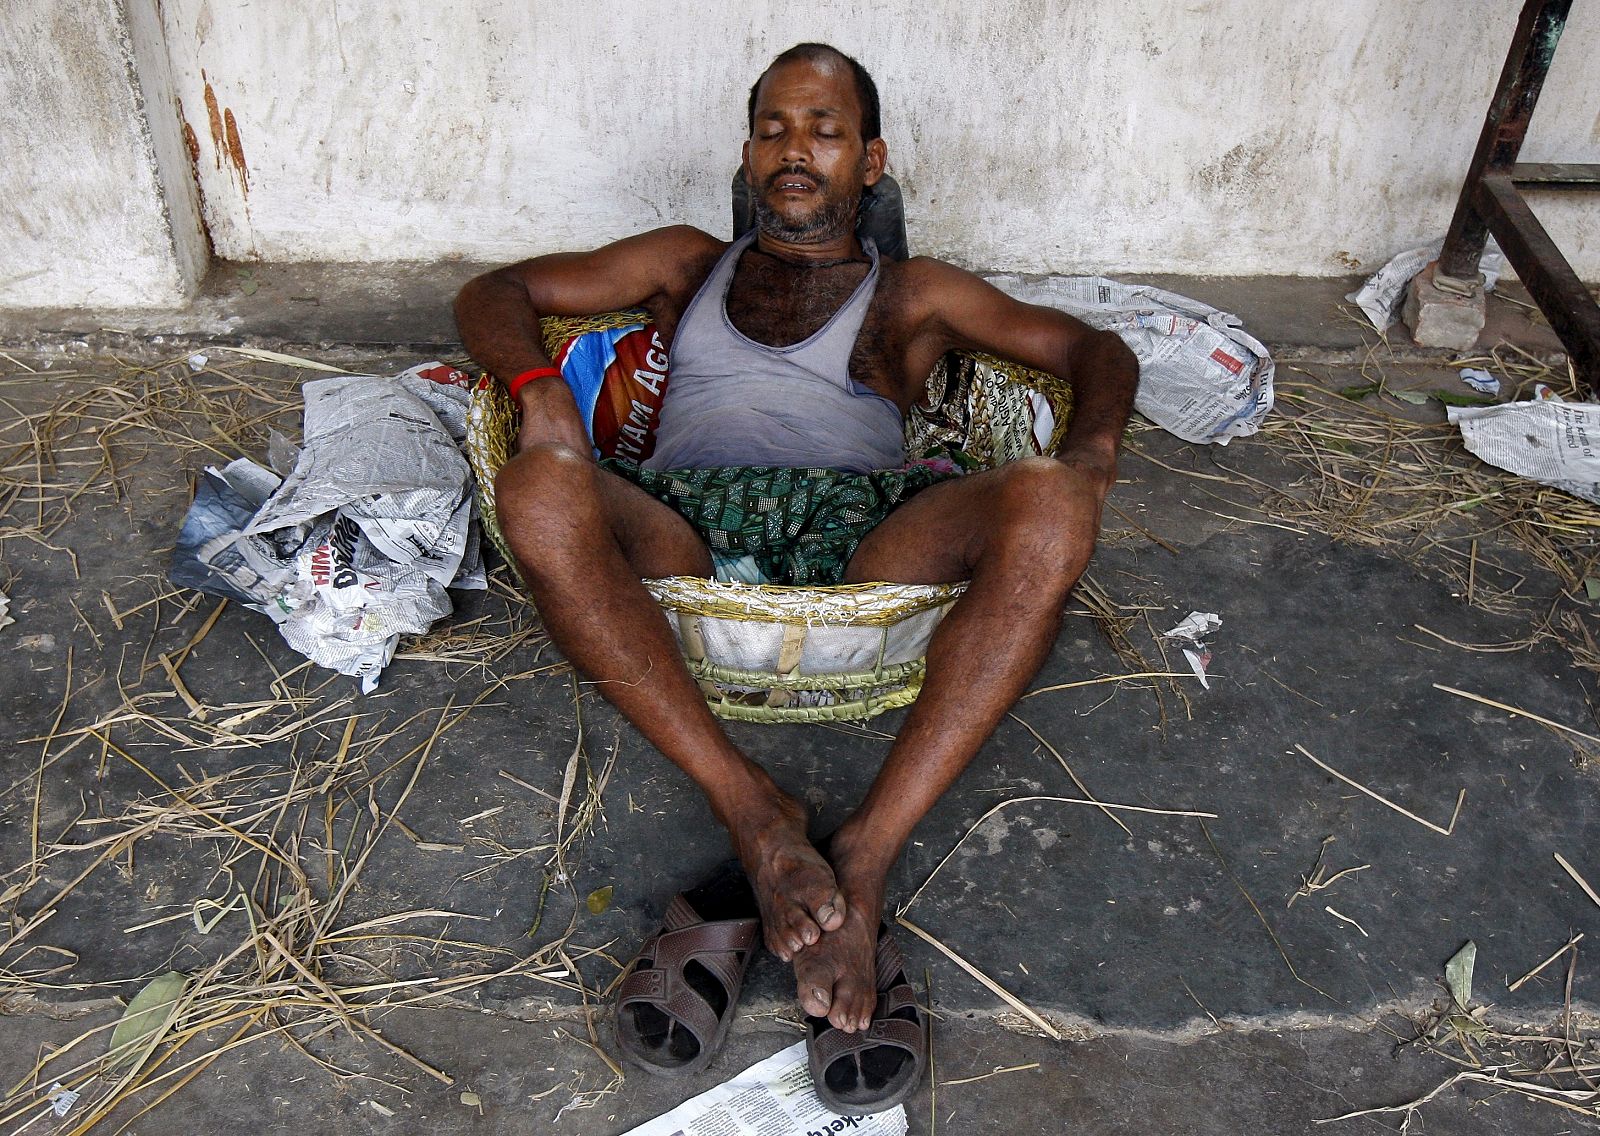 Un jornalero descansa en la sombra en plena ola de calor en Calcuta, India.